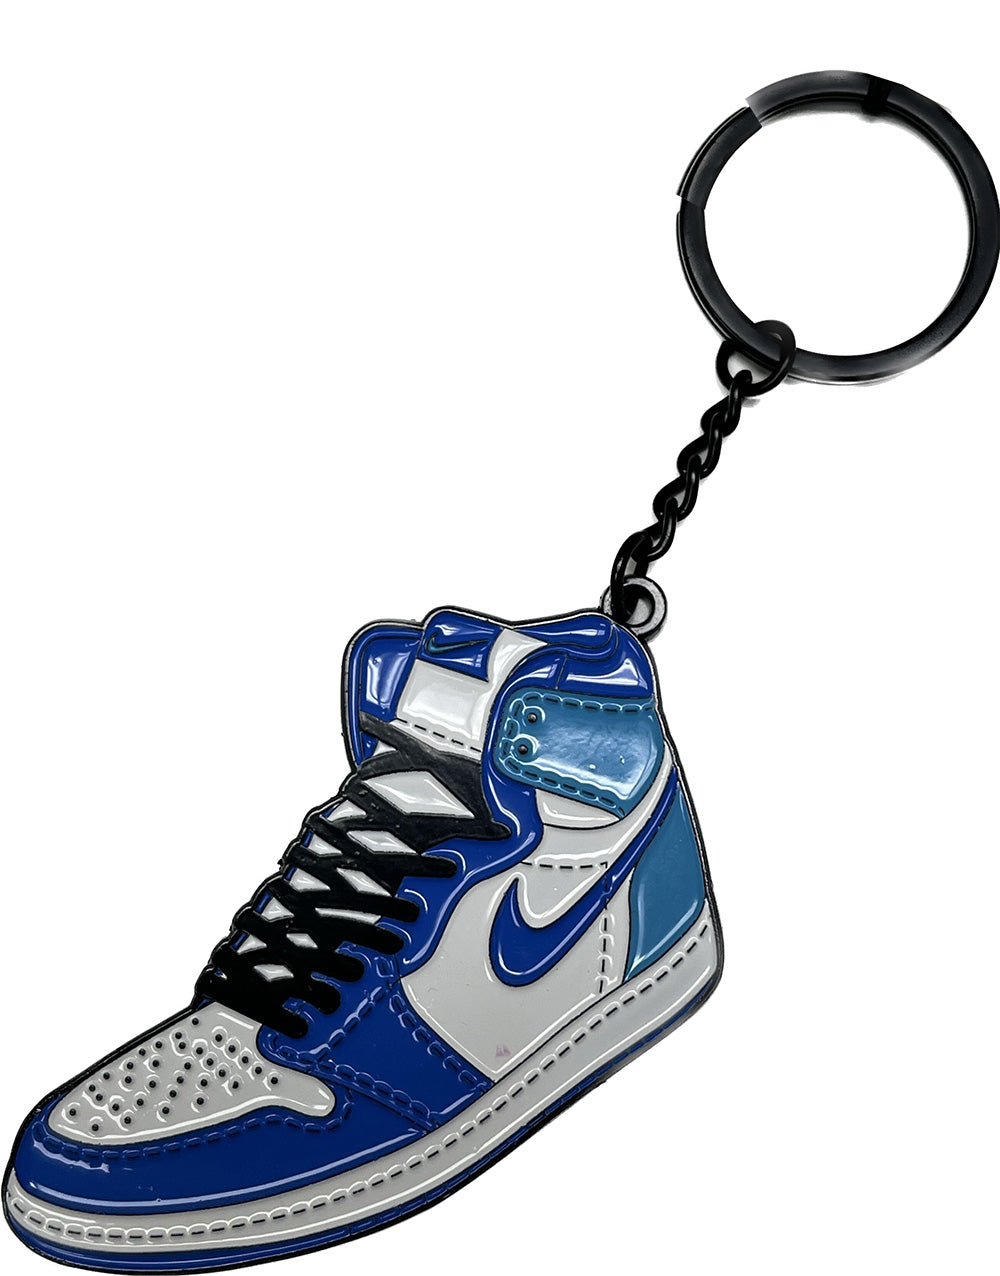 Jordan 1 Double Blue Keychain by Shoobox